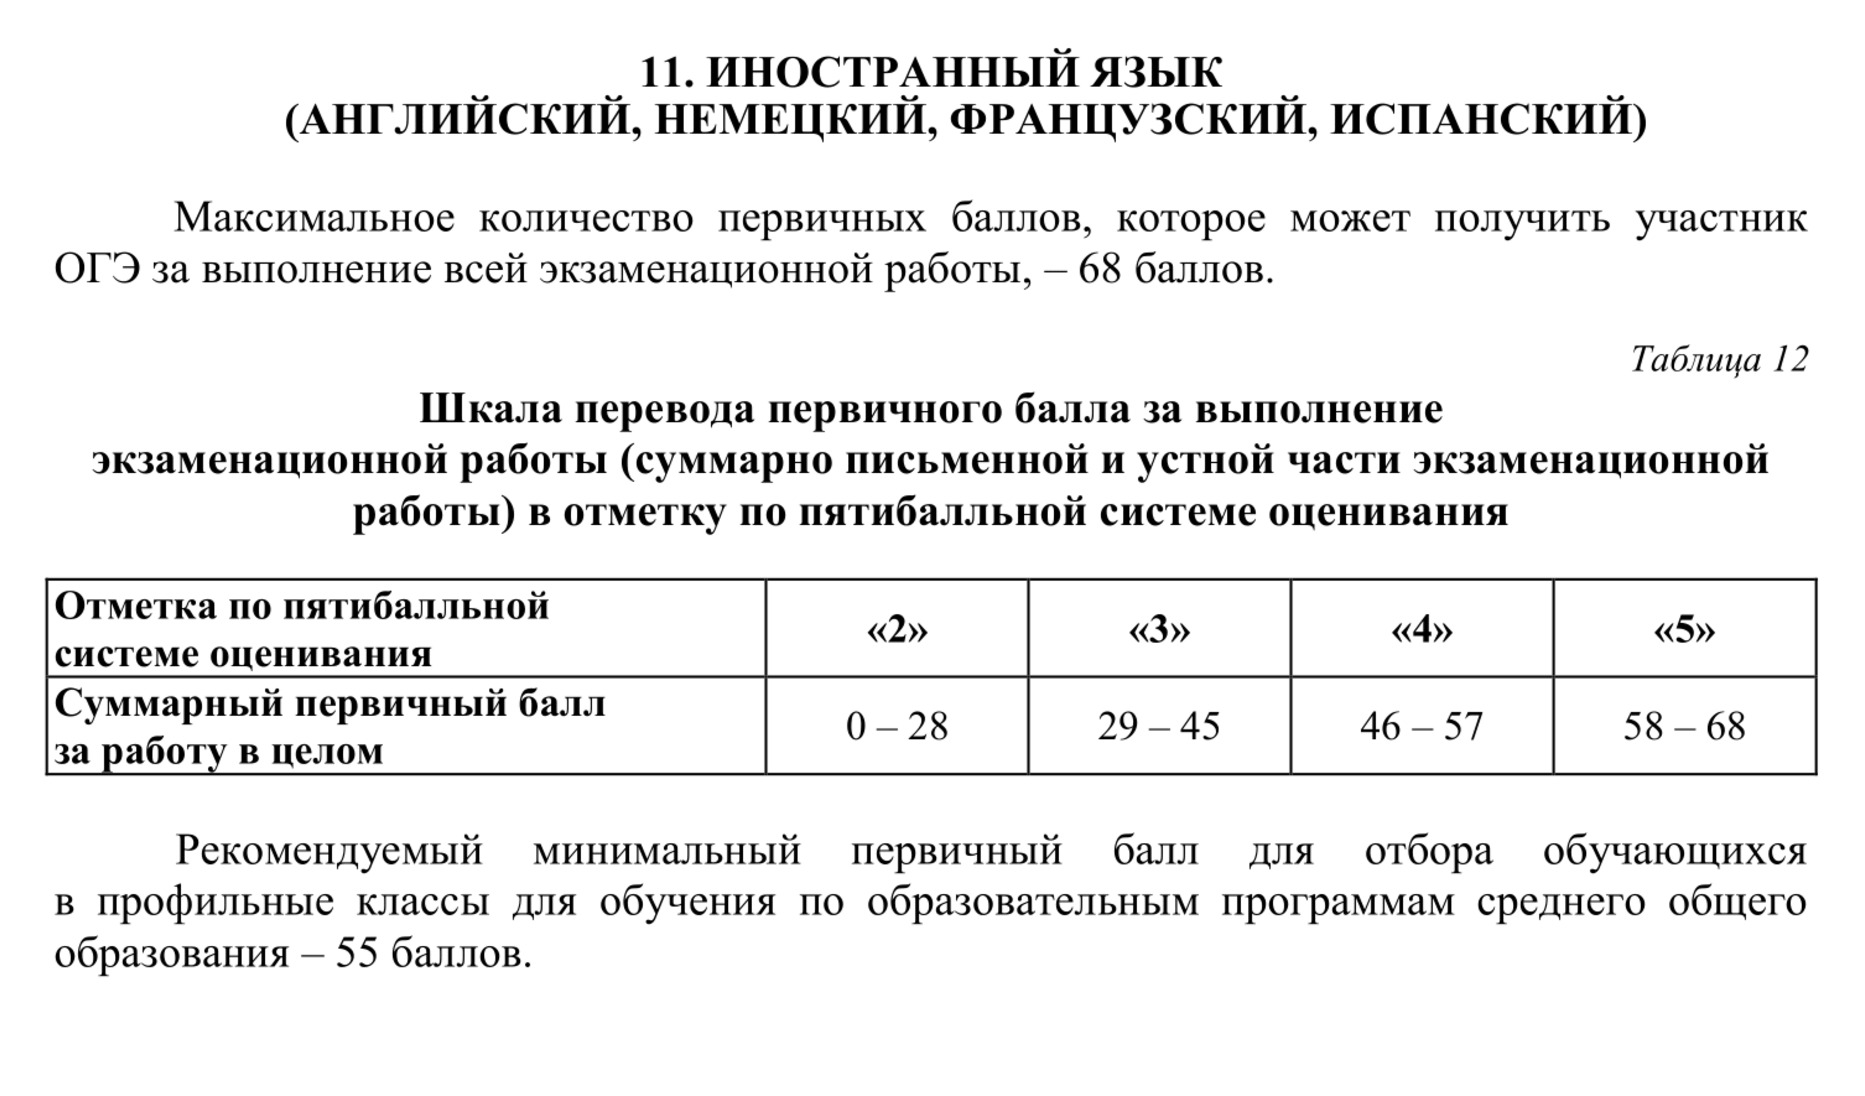 Таблица перевода первичных баллов в пятибалльную шкалу. Источник: doc.fipi.ru